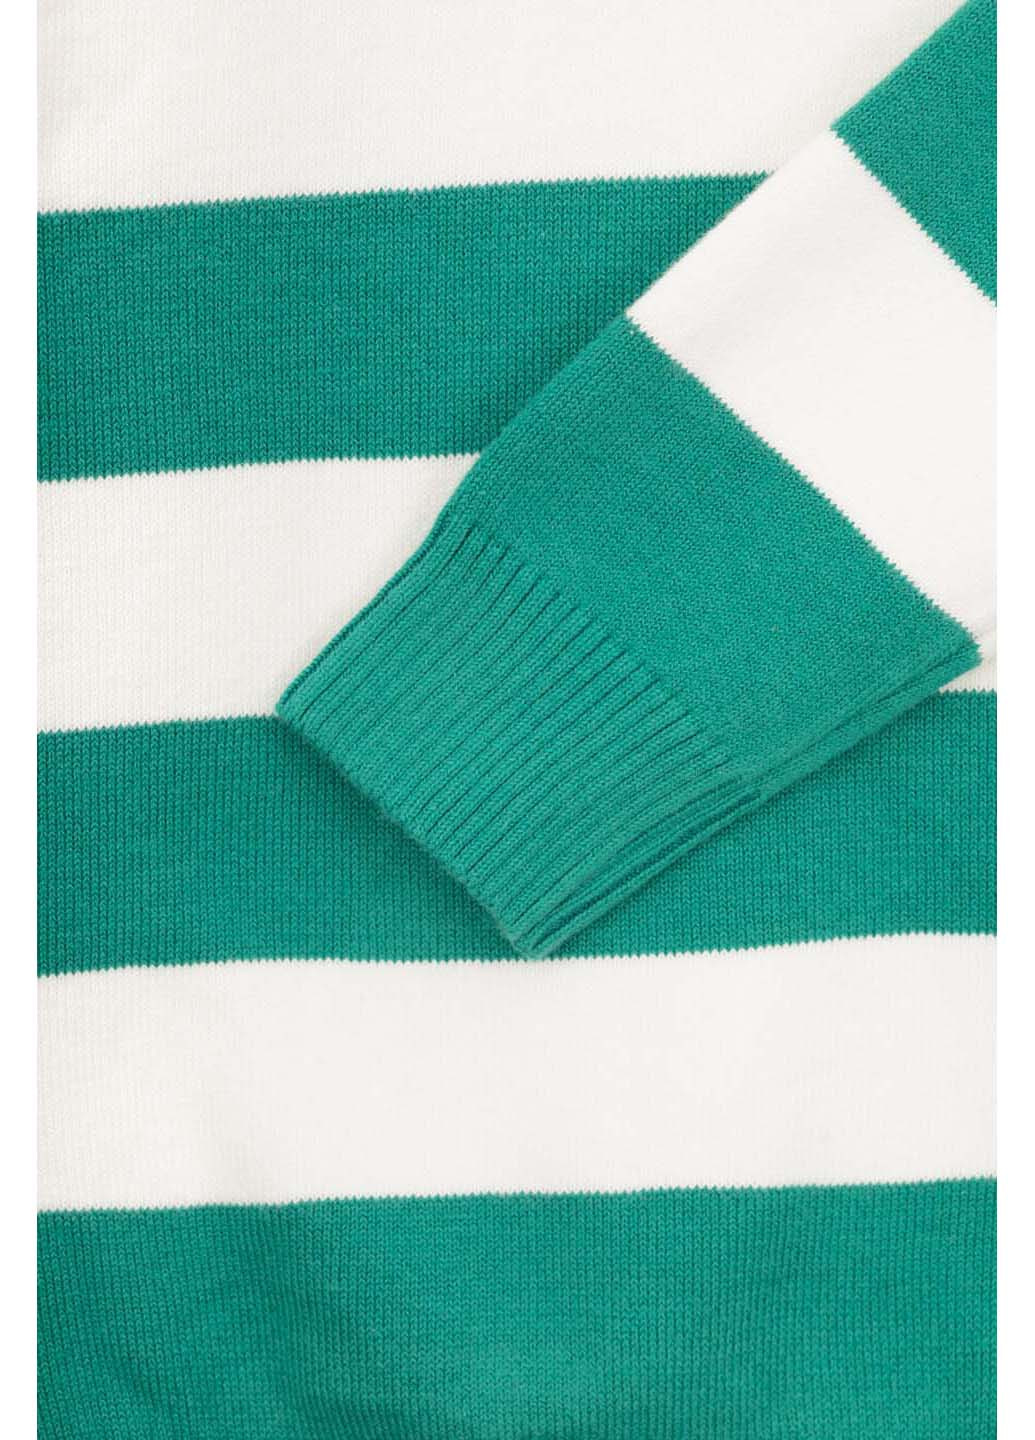 Зеленый демисезонный свитер Lizi Kids